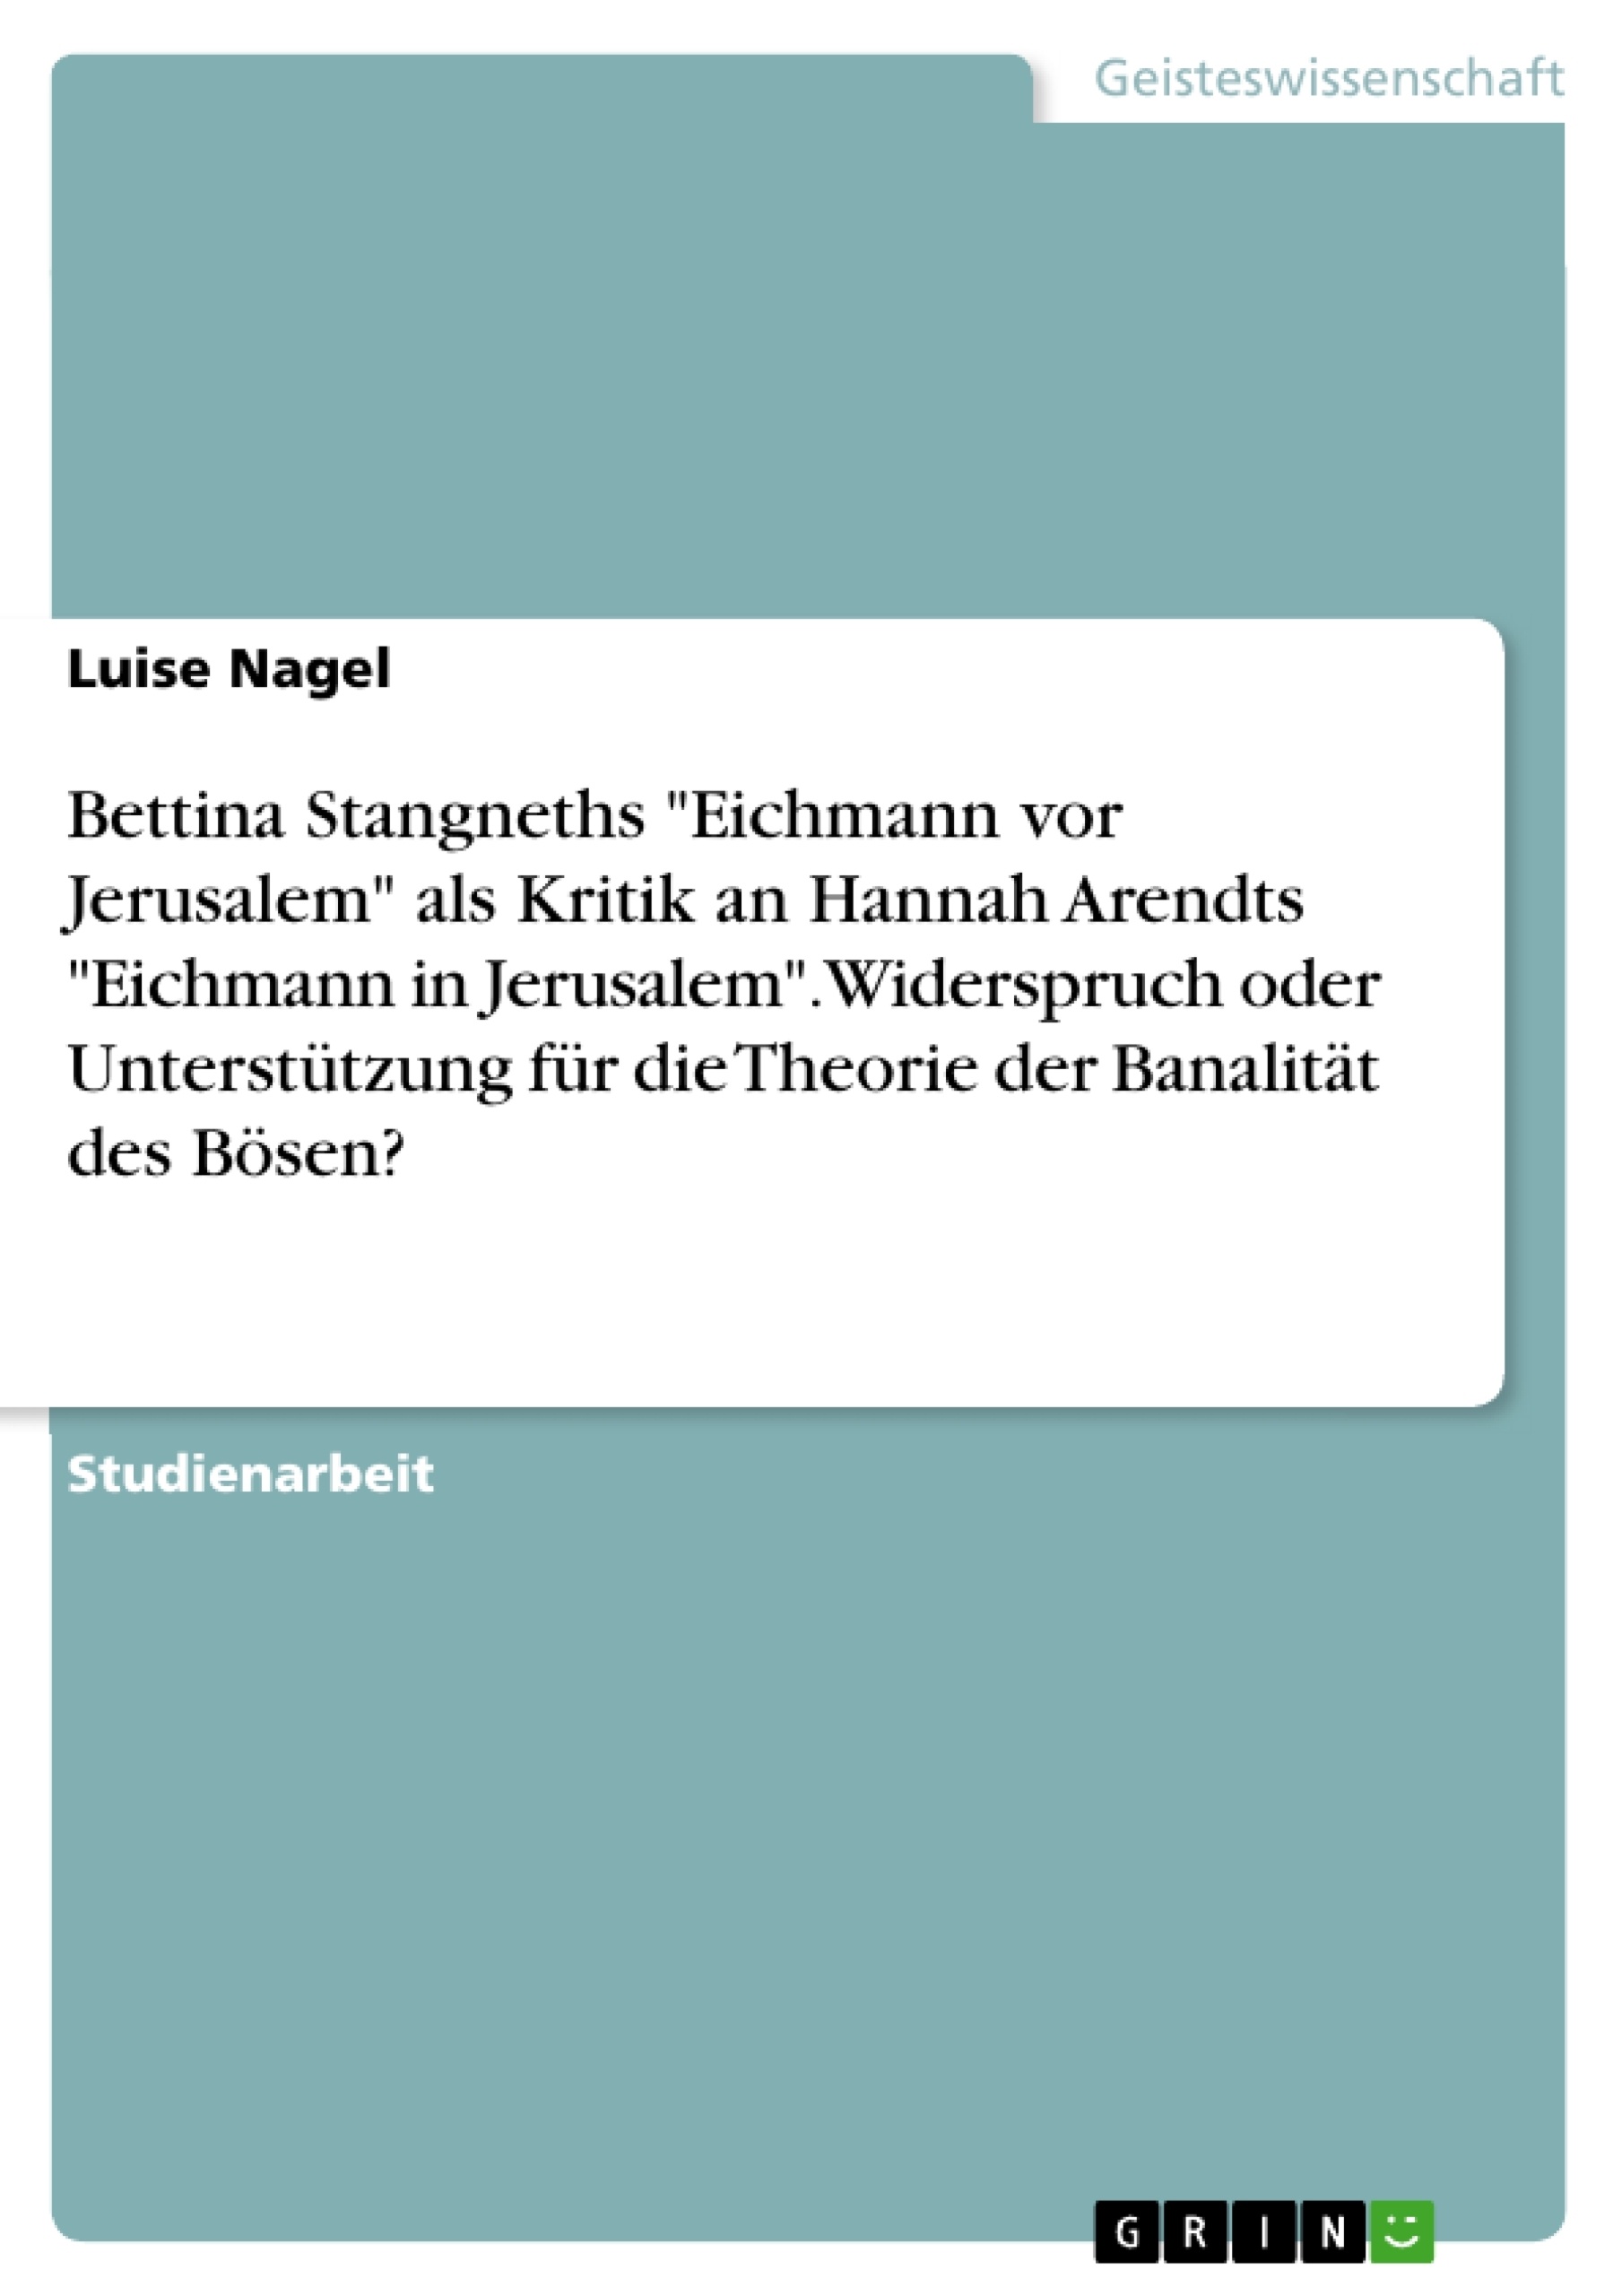 Title: Bettina Stangneths "Eichmann vor Jerusalem" als Kritik an Hannah Arendts "Eichmann in Jerusalem". Widerspruch oder Unterstützung für die Theorie der Banalität des Bösen?